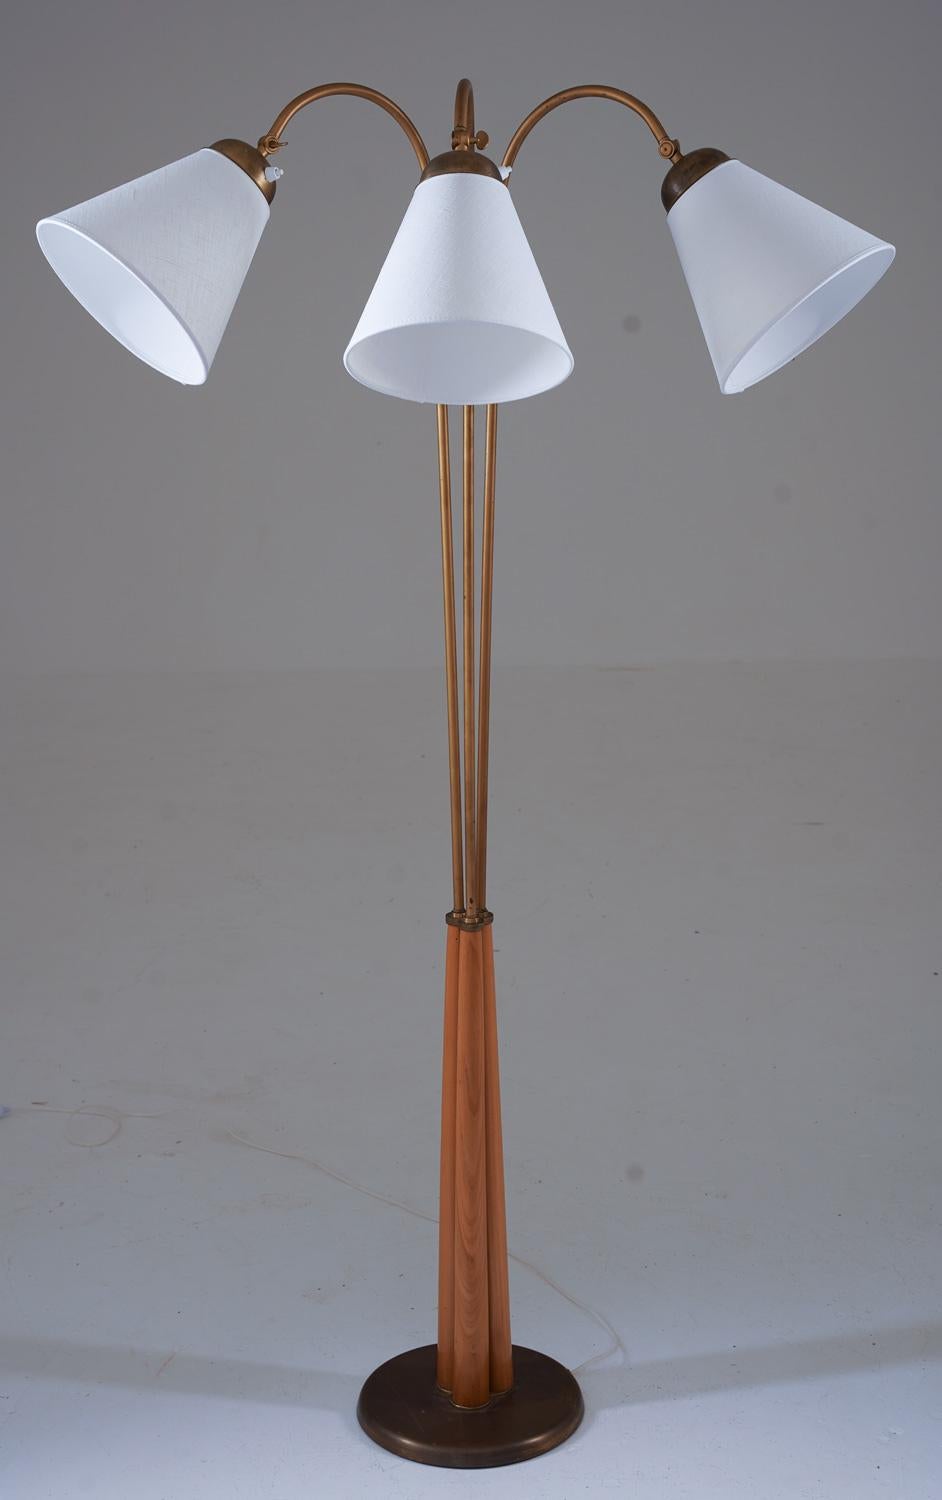 Il s'agit d'un joli lampadaire moderne suédois qui a été fabriqué en Suède dans les années 1940. La lampe comporte trois bras pivotants, soutenus par des tiges en bois qui sont fixées dans la base en laiton.

Condit :
La lampe est en très bon état